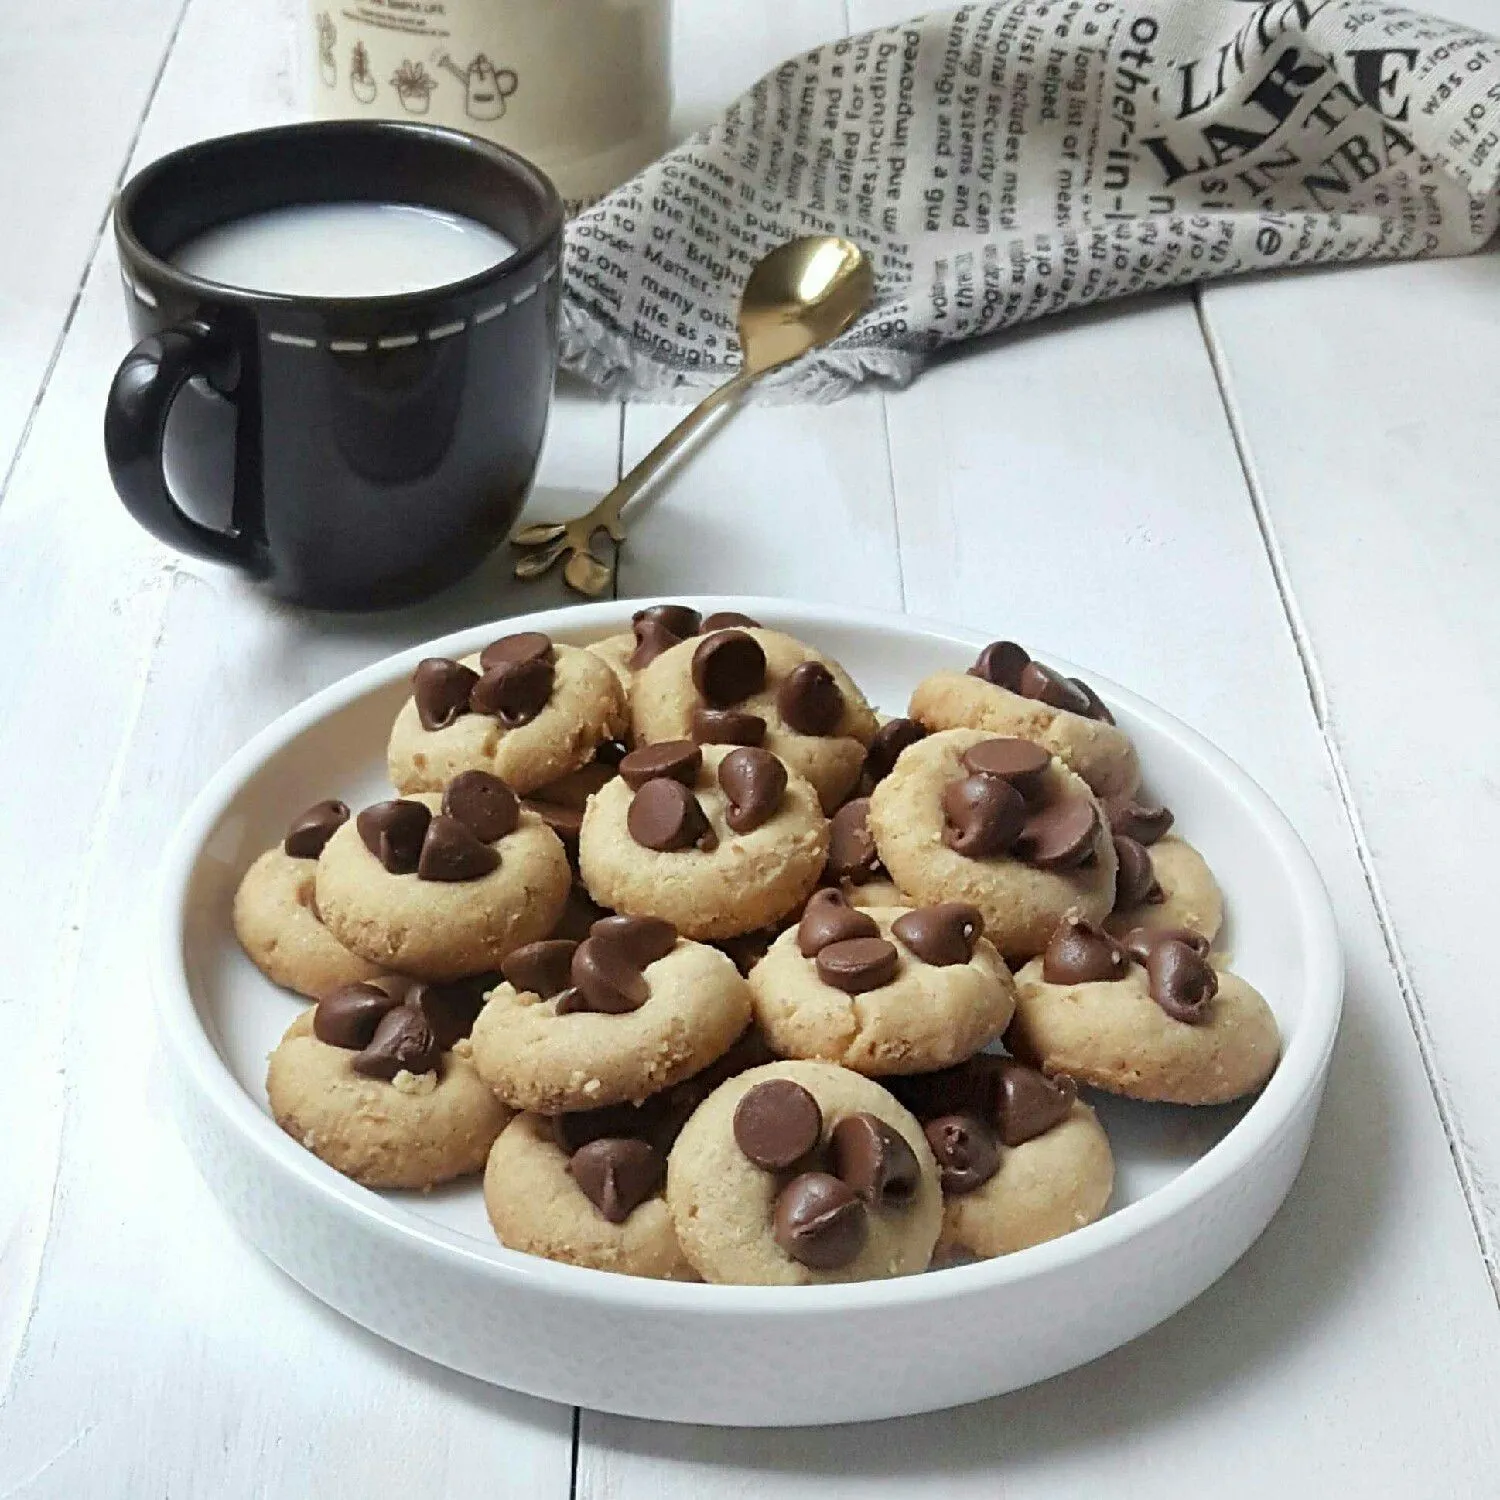 ChocoChip Cookies #JagoMasakMinggu11